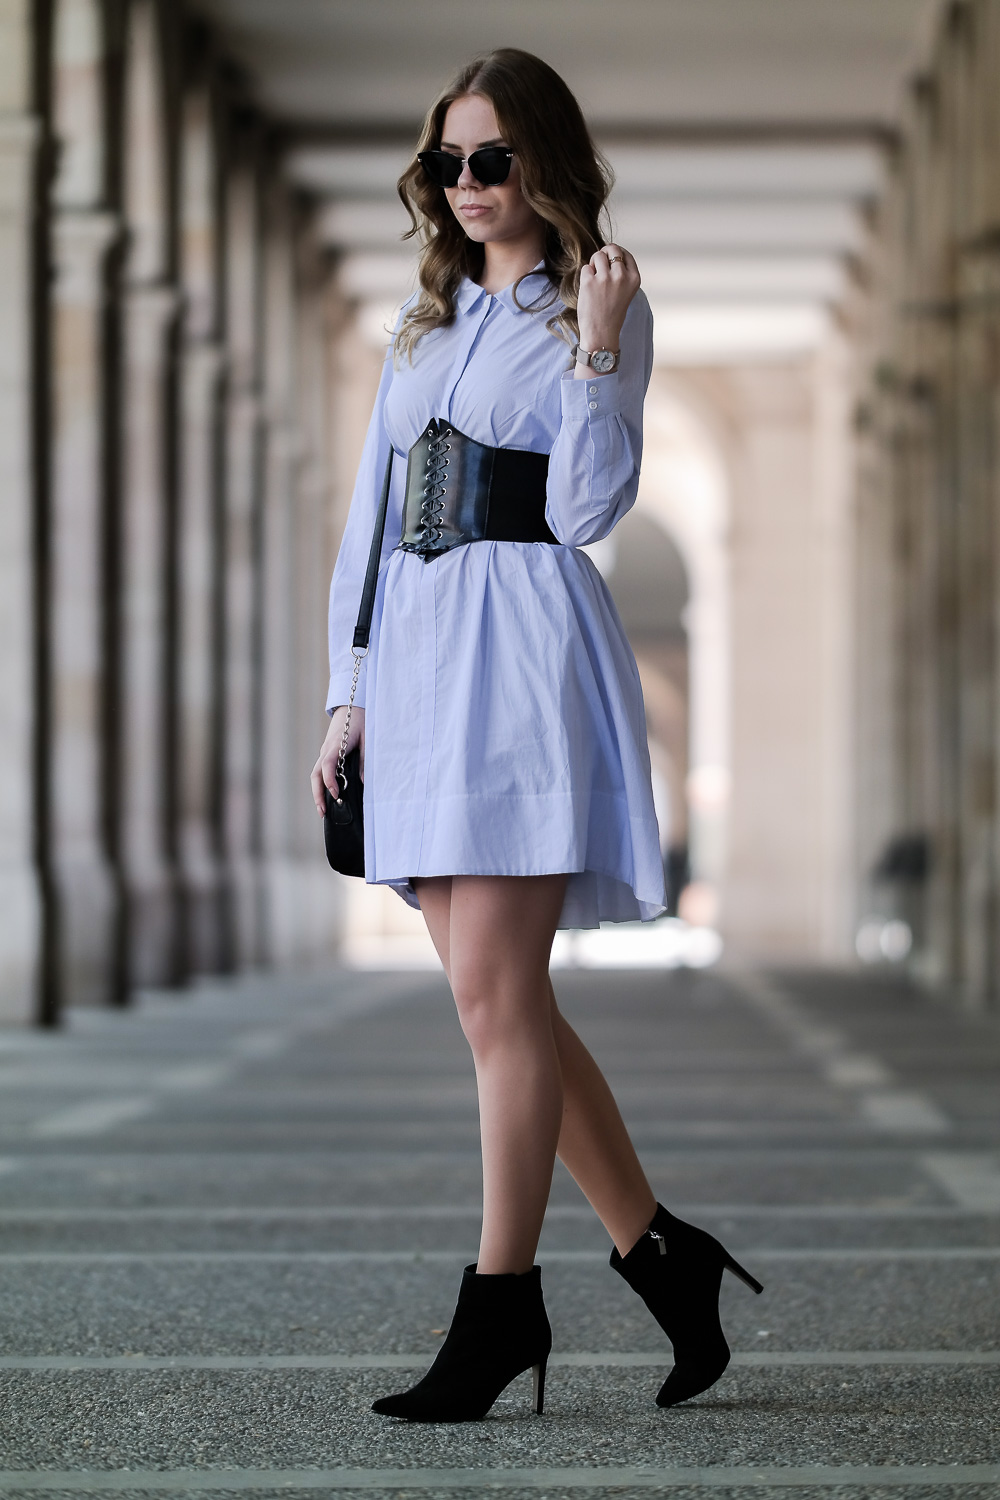 Mode Blog München-Barcelona Outfit-Korsage-schwarz-oversize-Kleid-Sonnenbrille-Stiefeletten